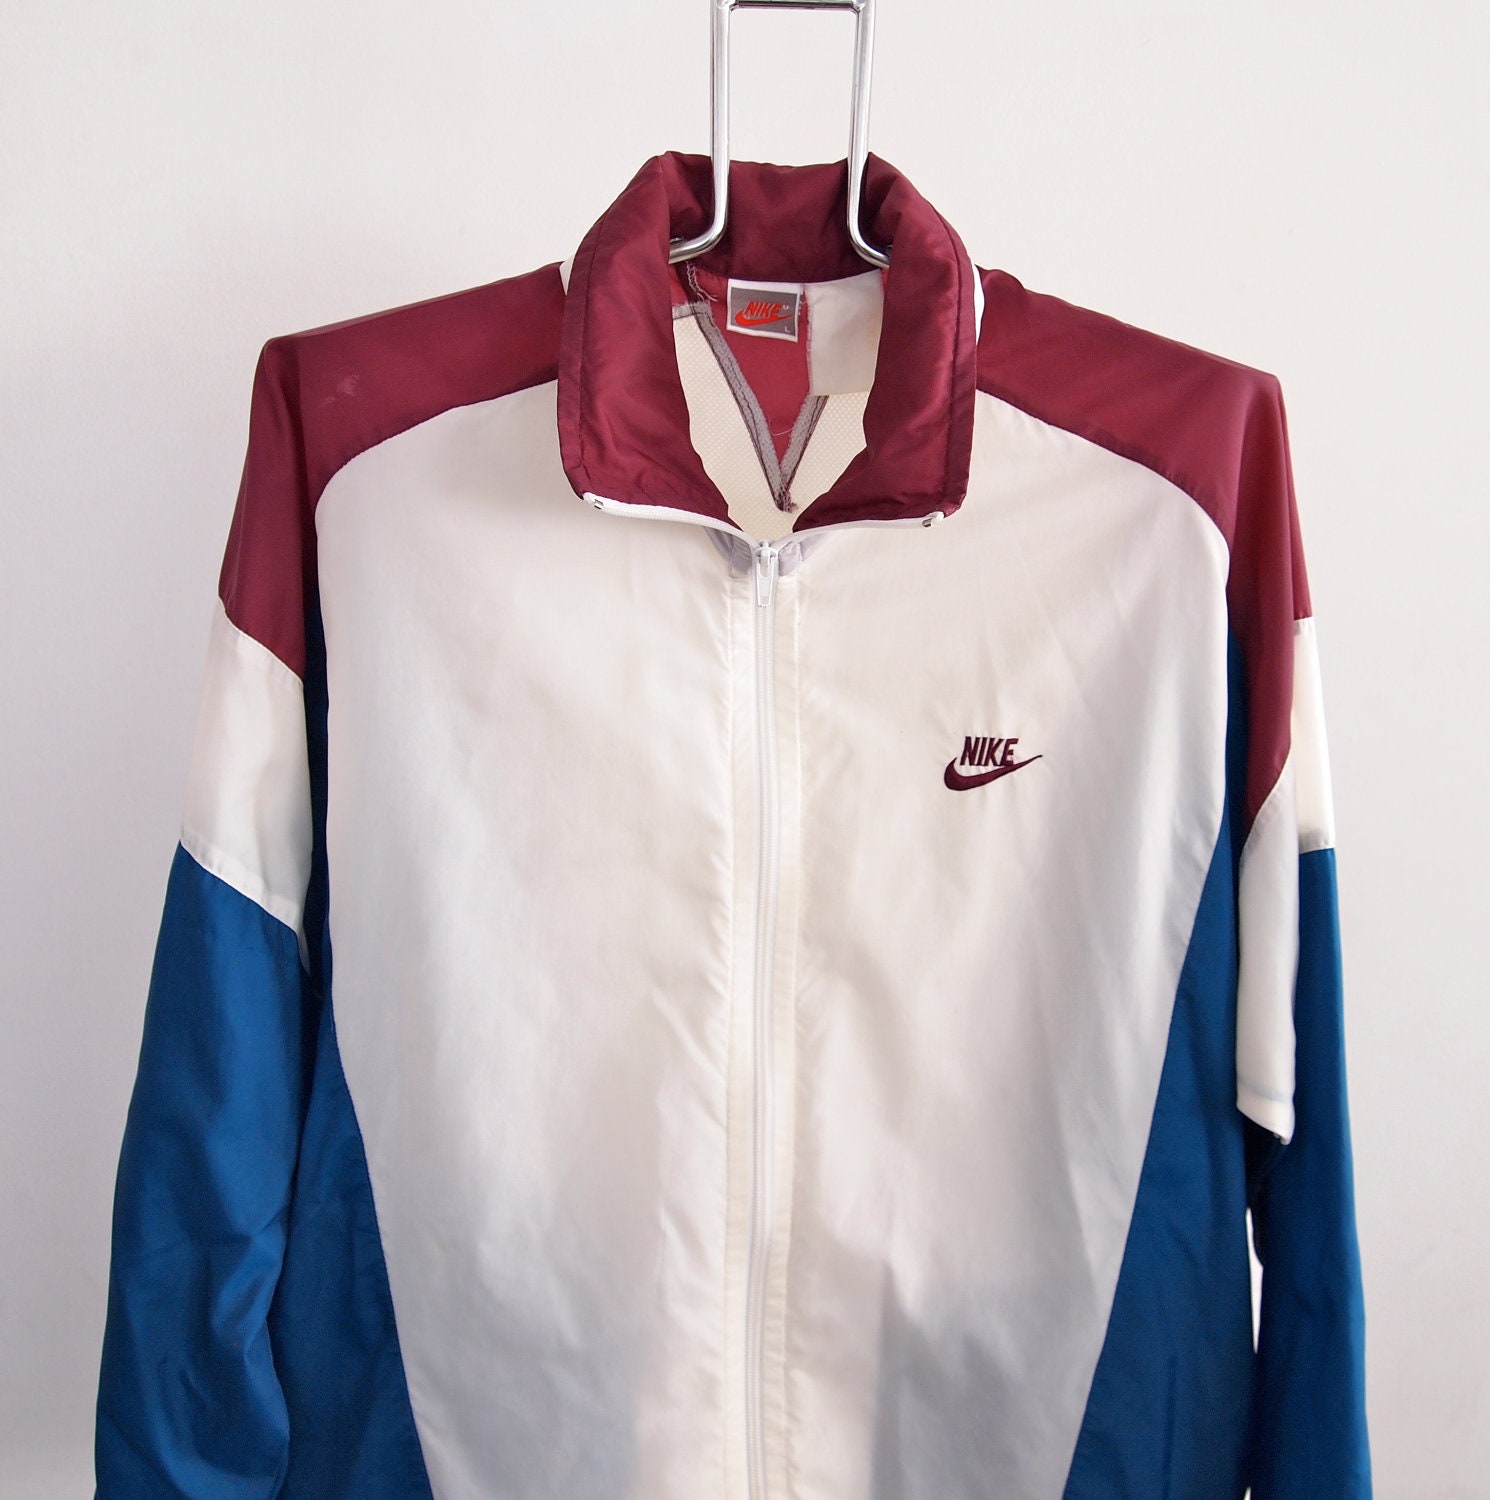 Vintage Nike Windbreaker Jacket Large Maroon Blue White with